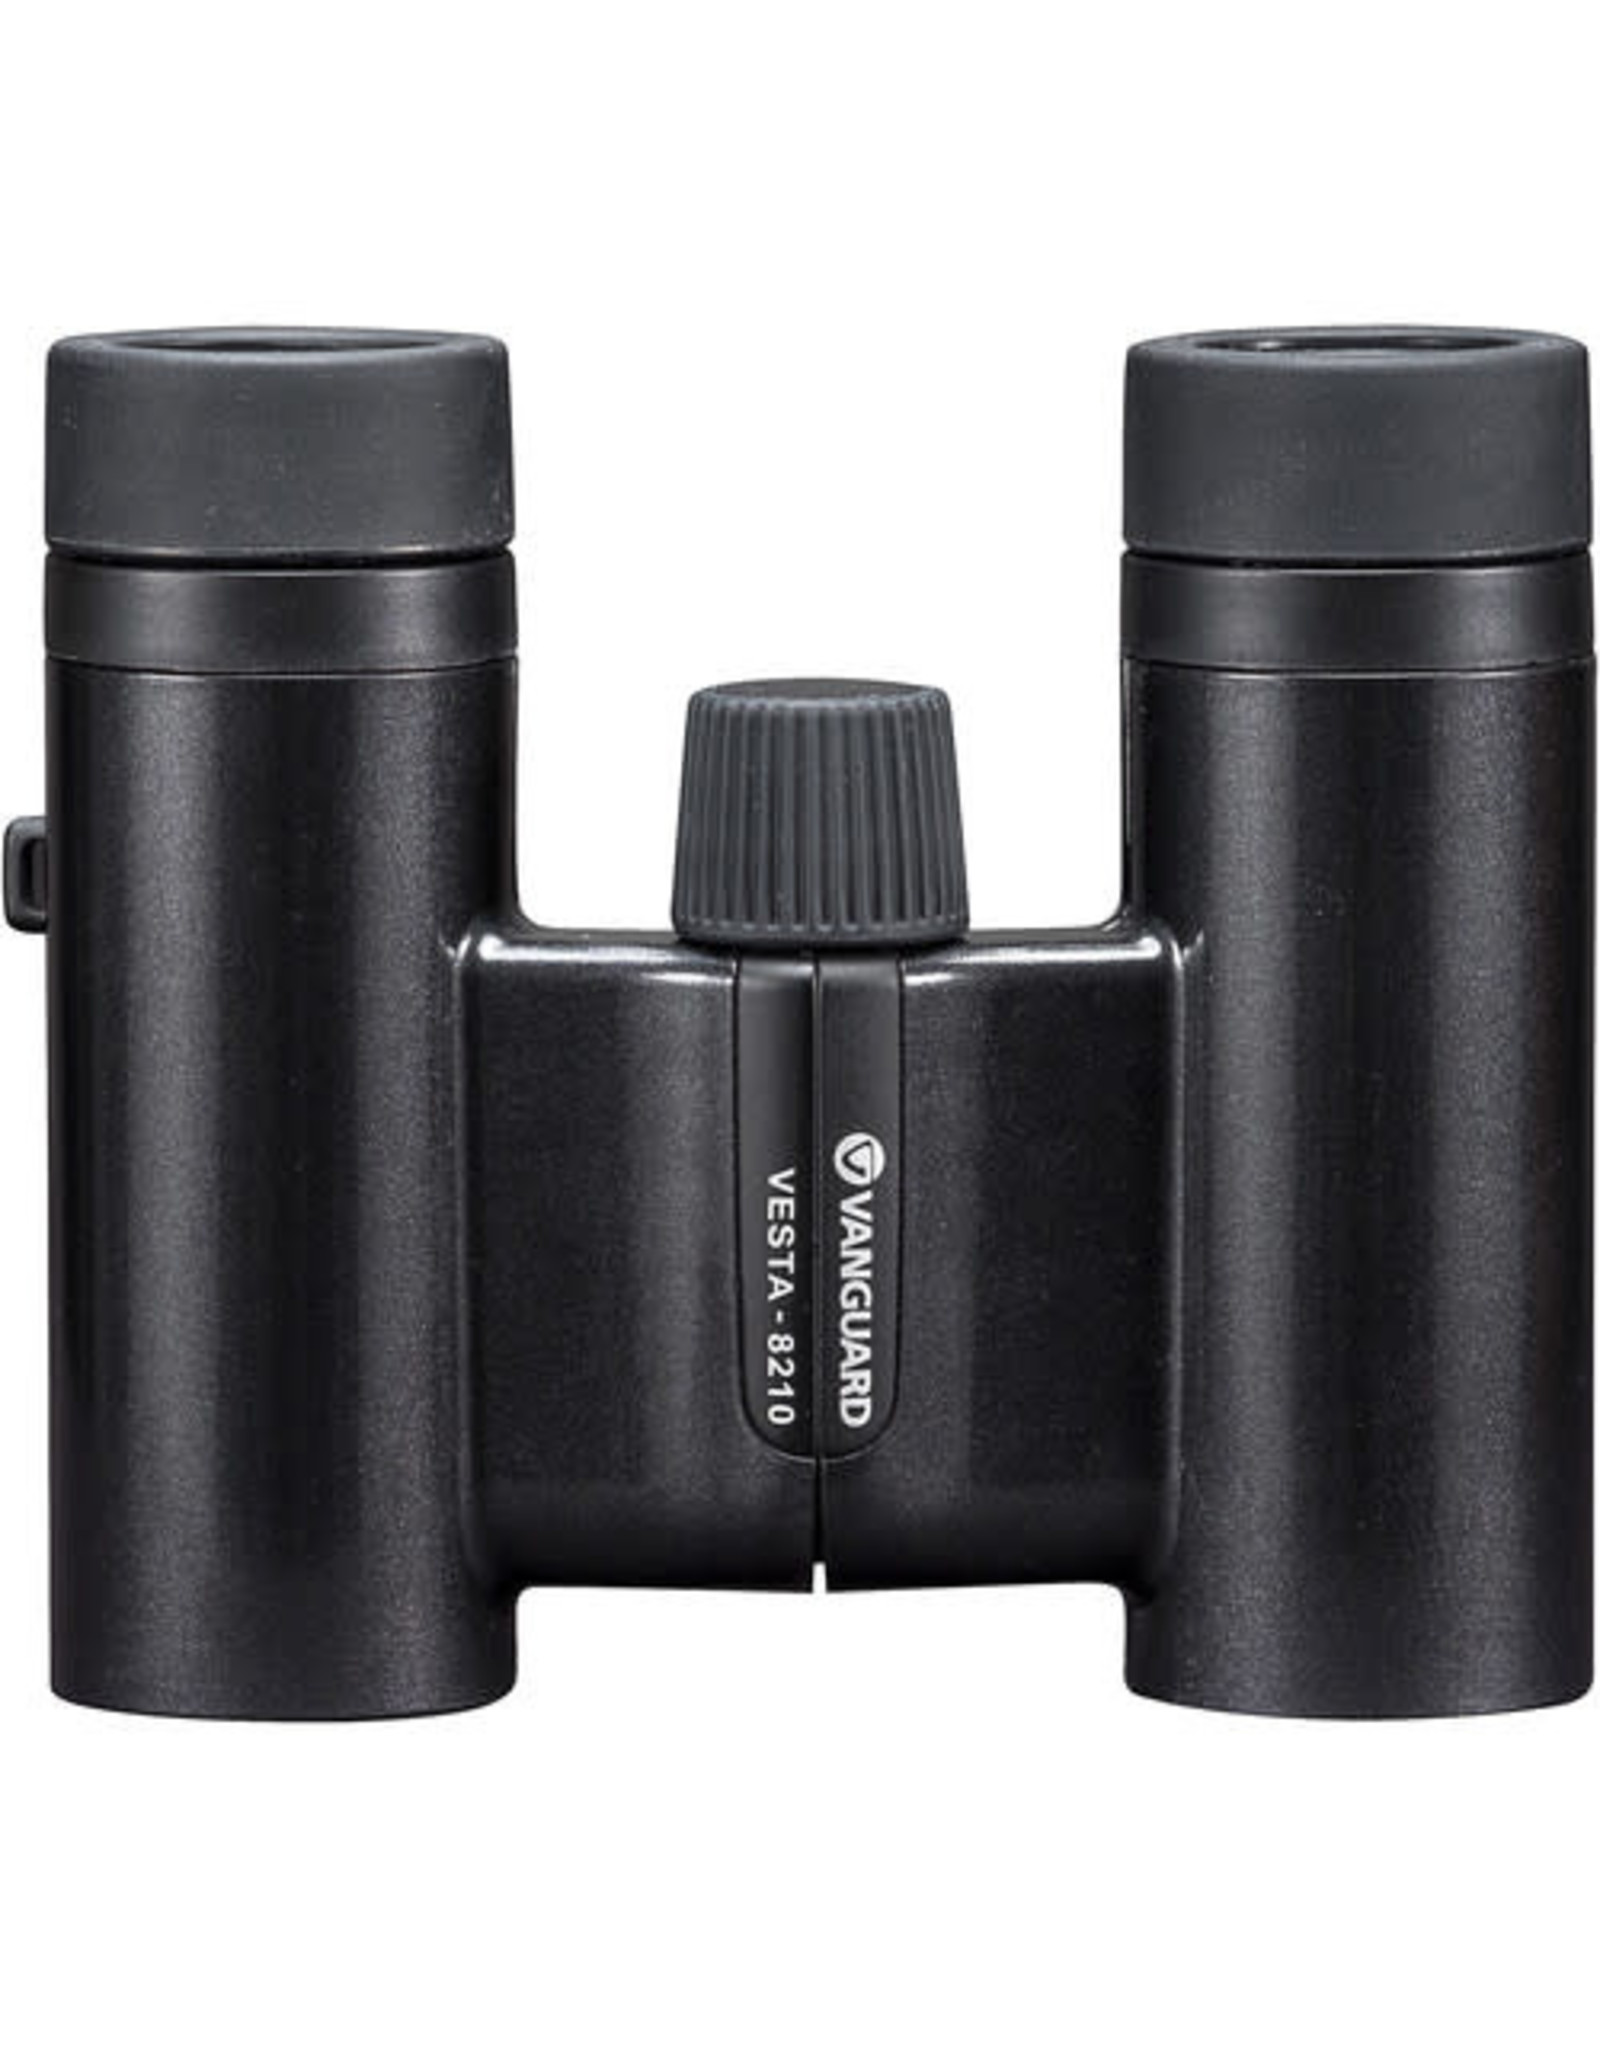 Vanguard Vanguard 8x21 Vesta Compact 21 Binoculars (Choose Color)